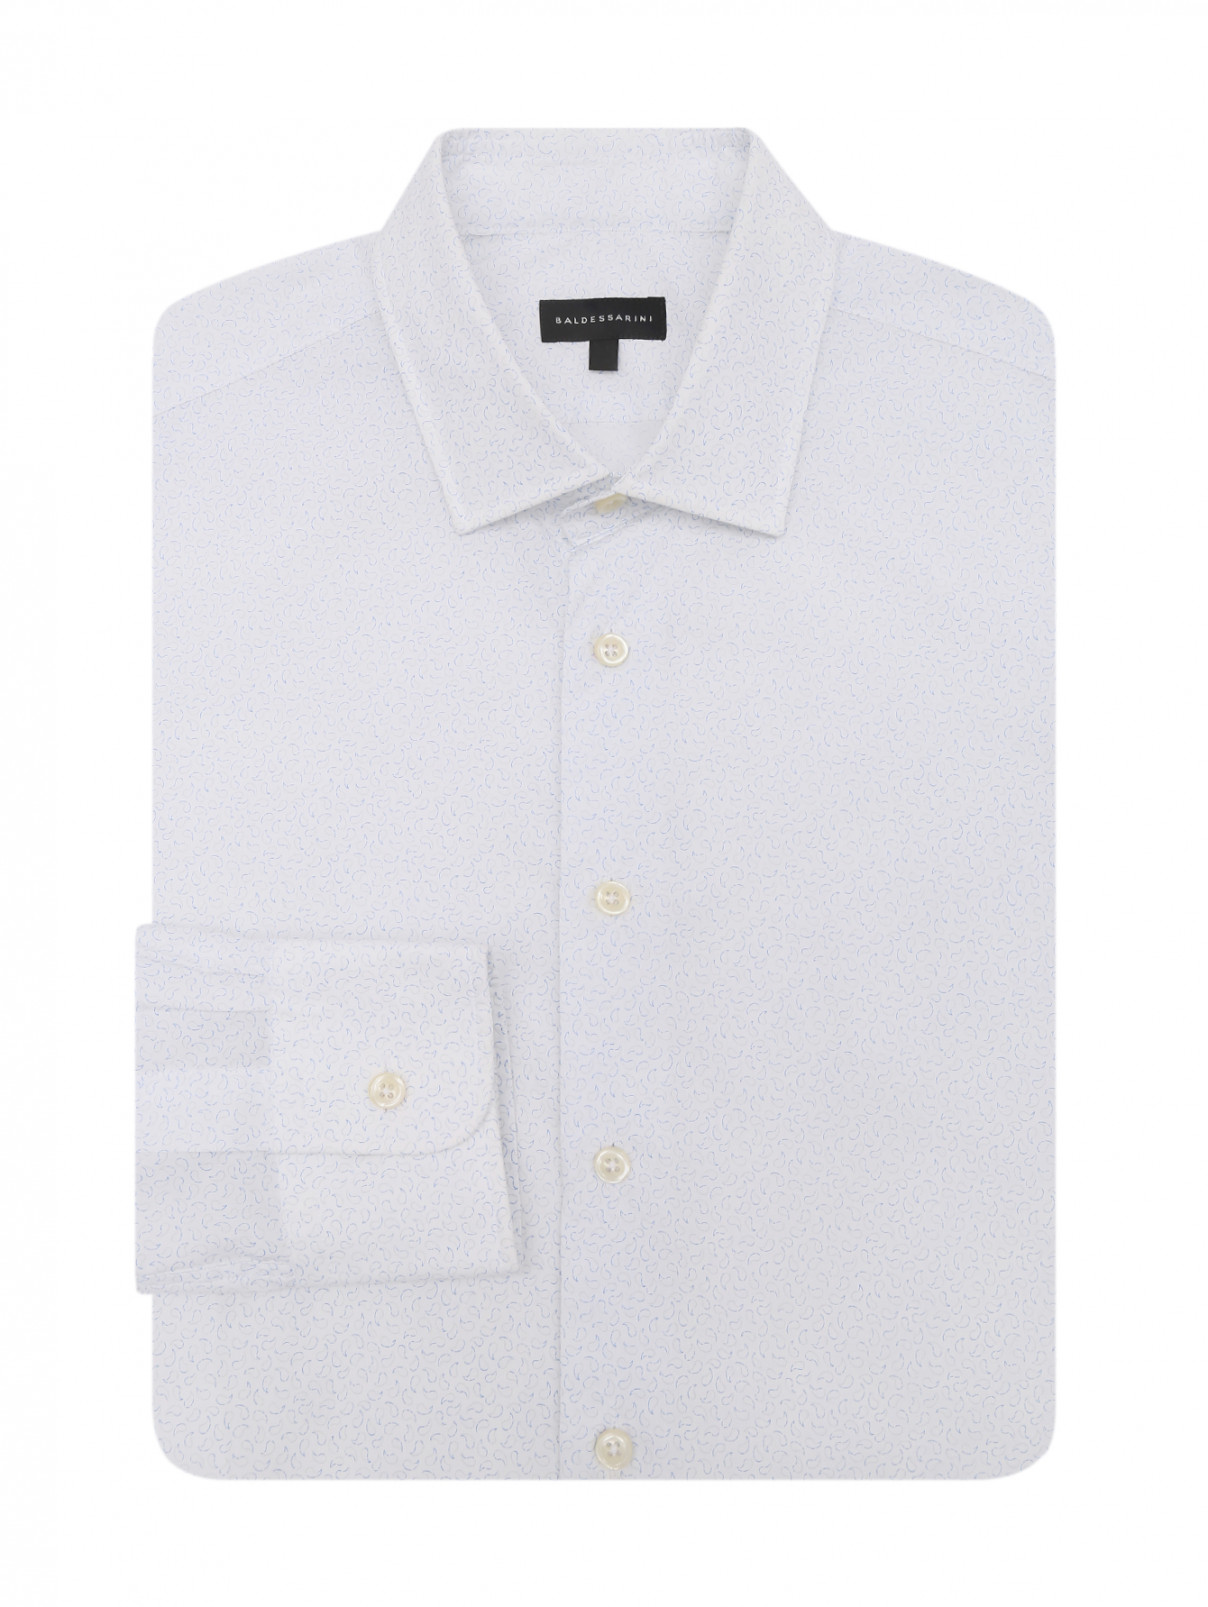 Рубашка из хлопка с узором Baldessarini  –  Общий вид  – Цвет:  Узор